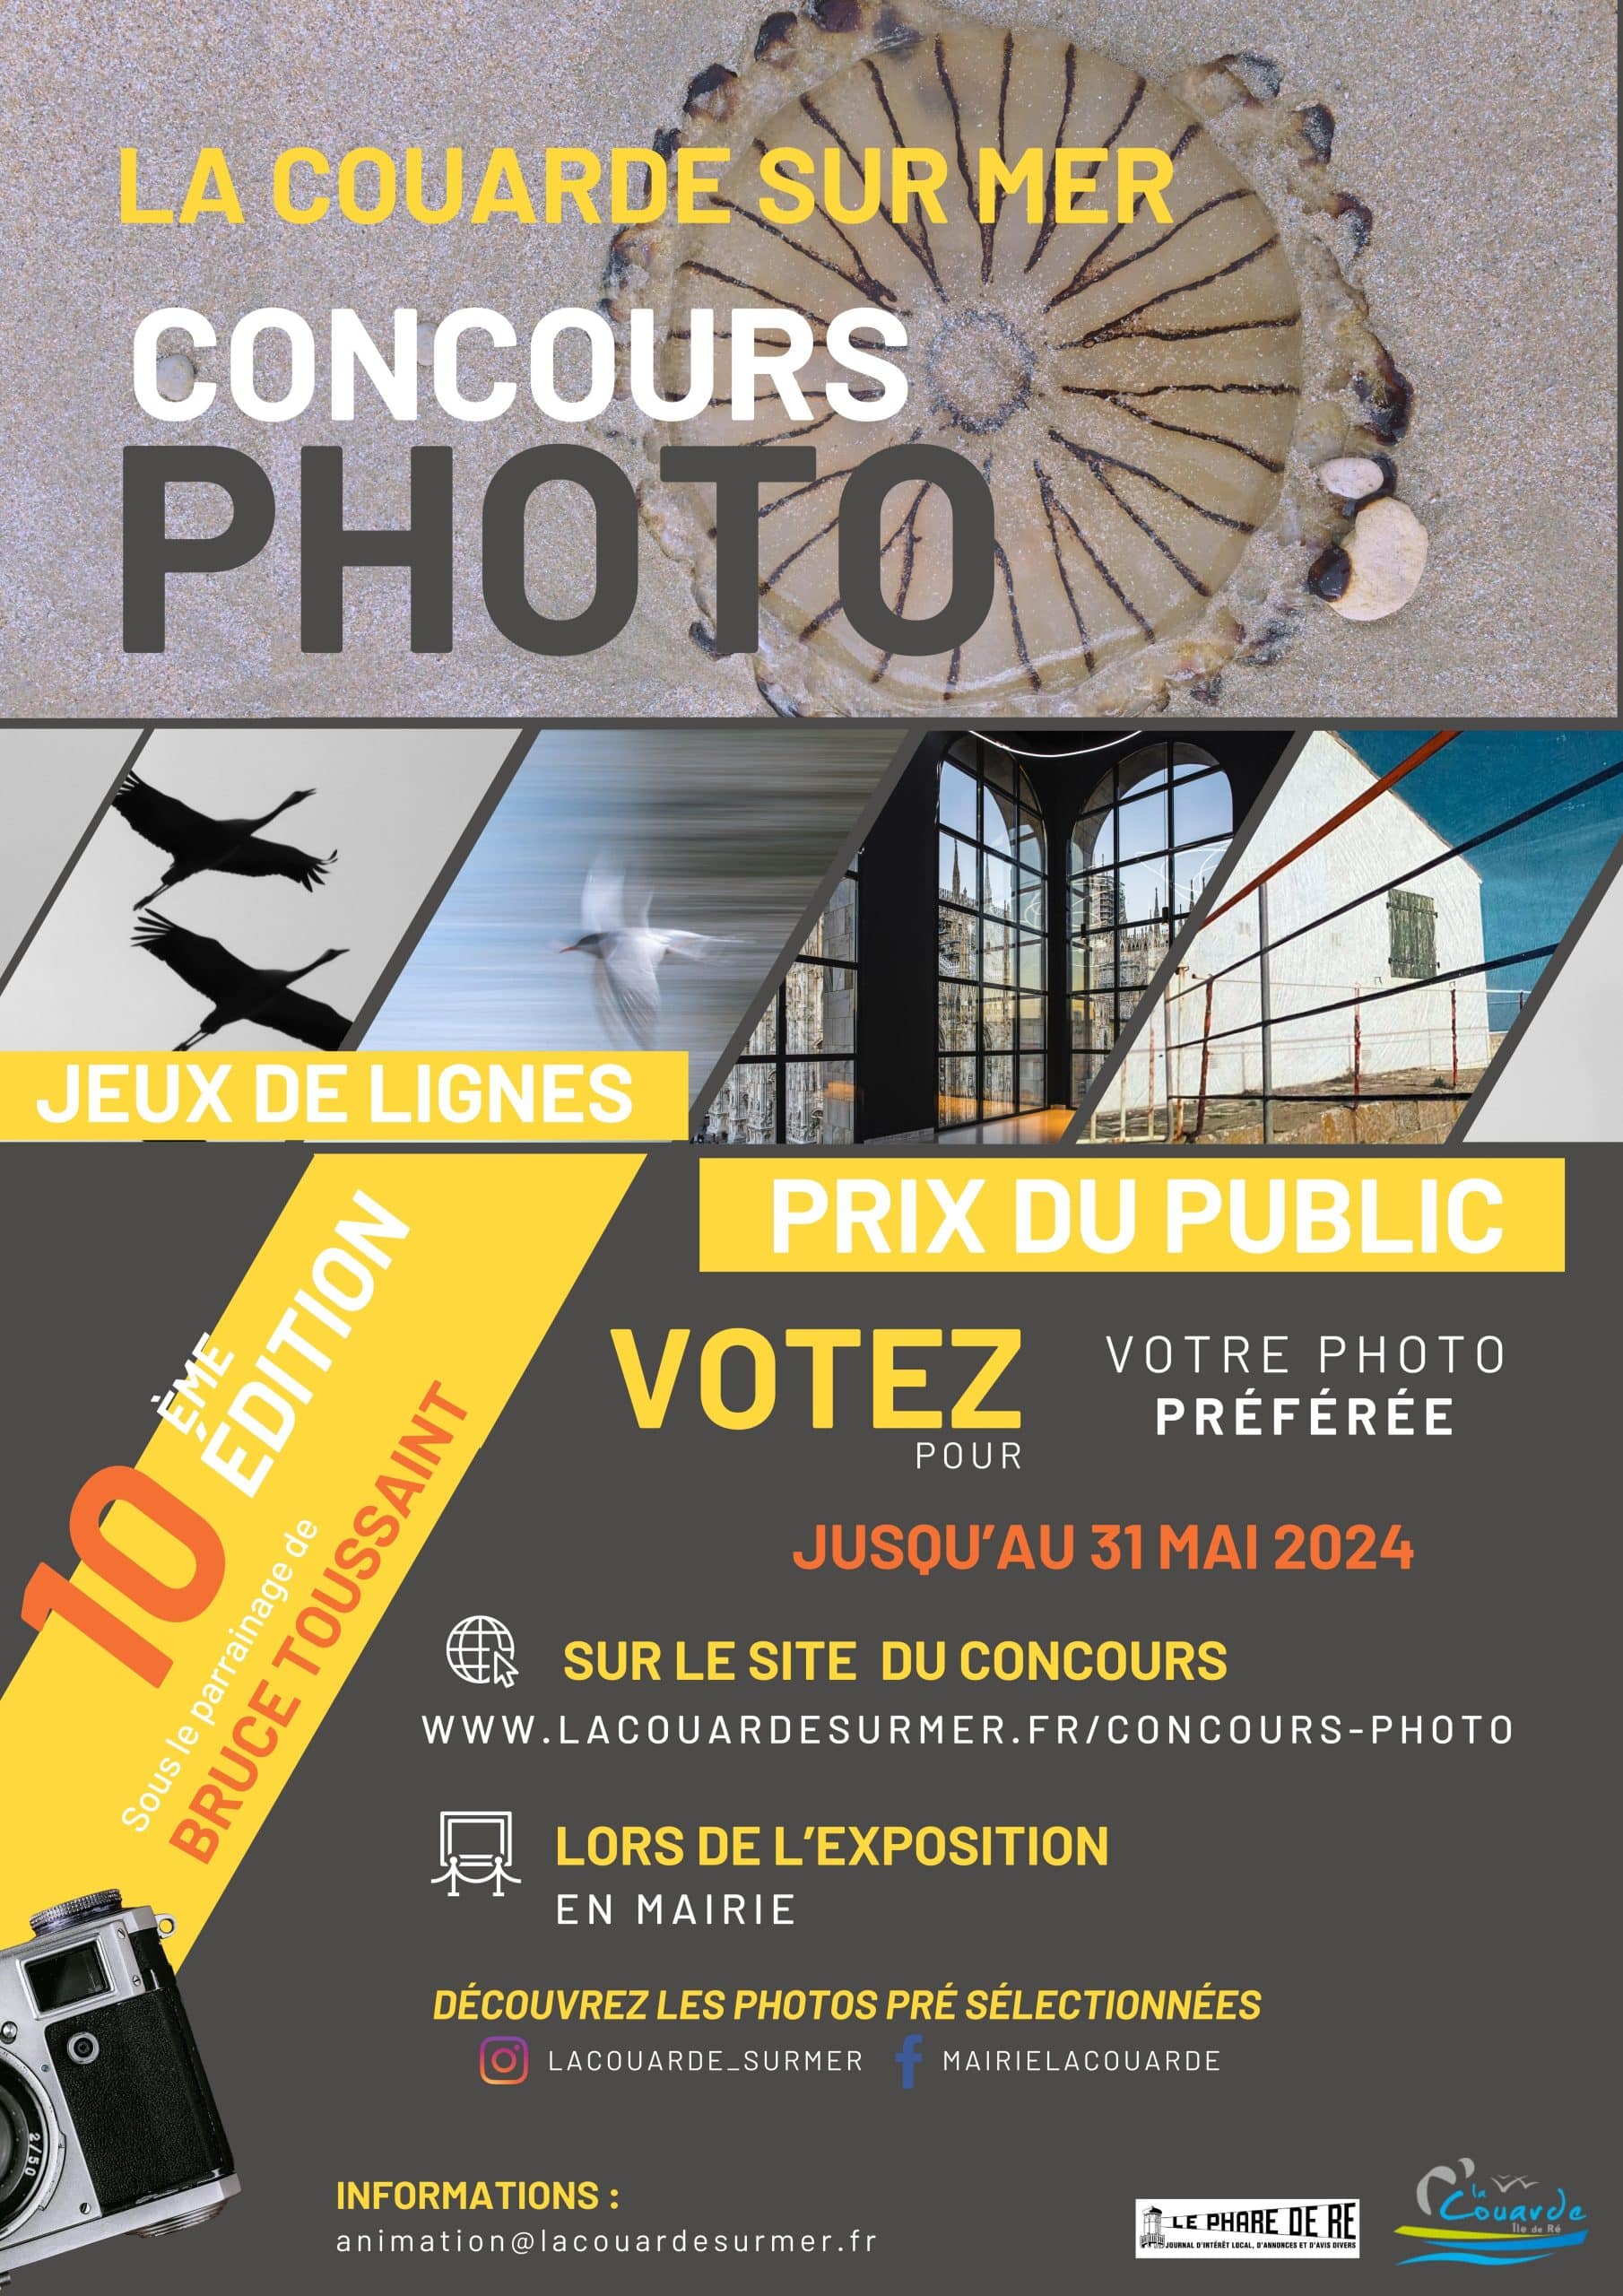 Concours photo de La Couarde-sur-Mer  - Votez pour le prix du public